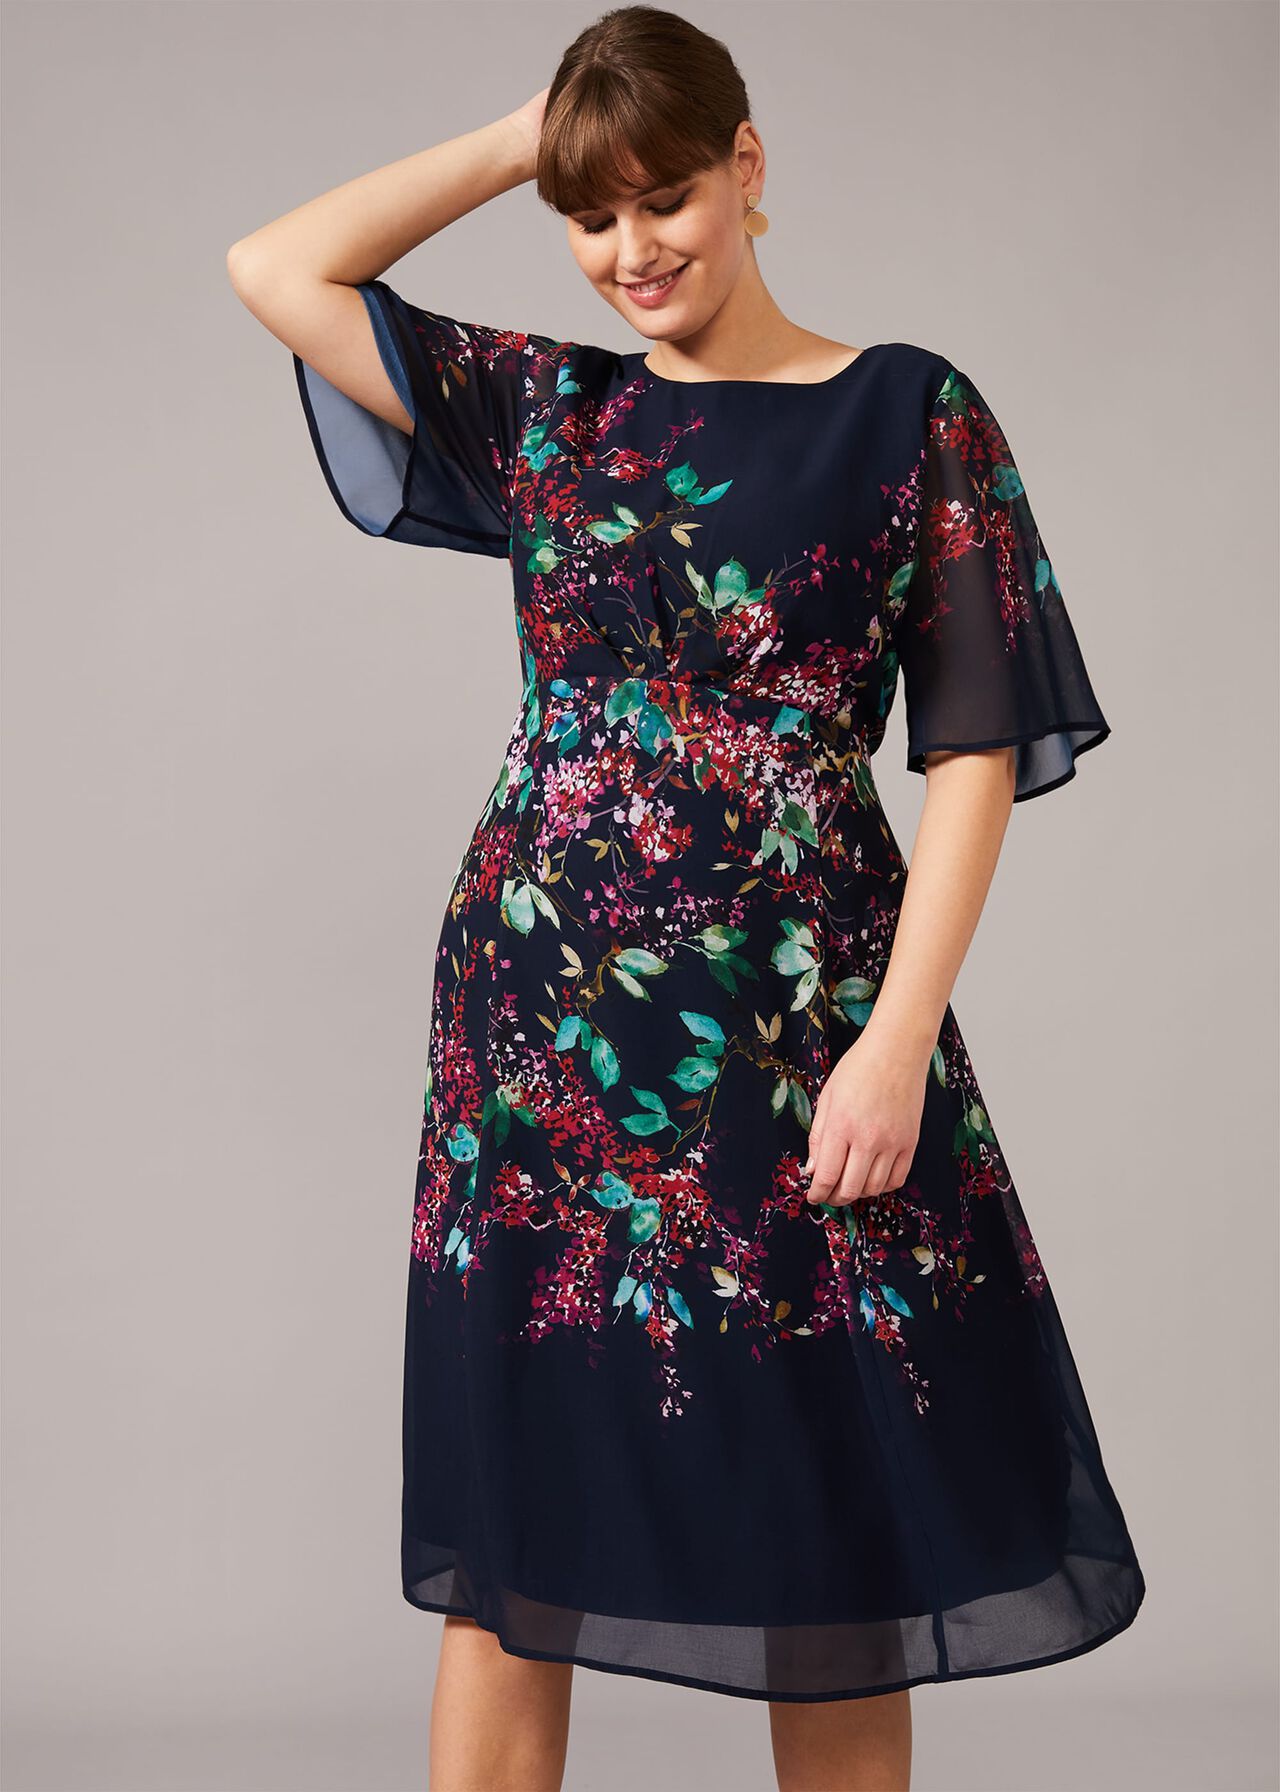 Codie Floral Dress